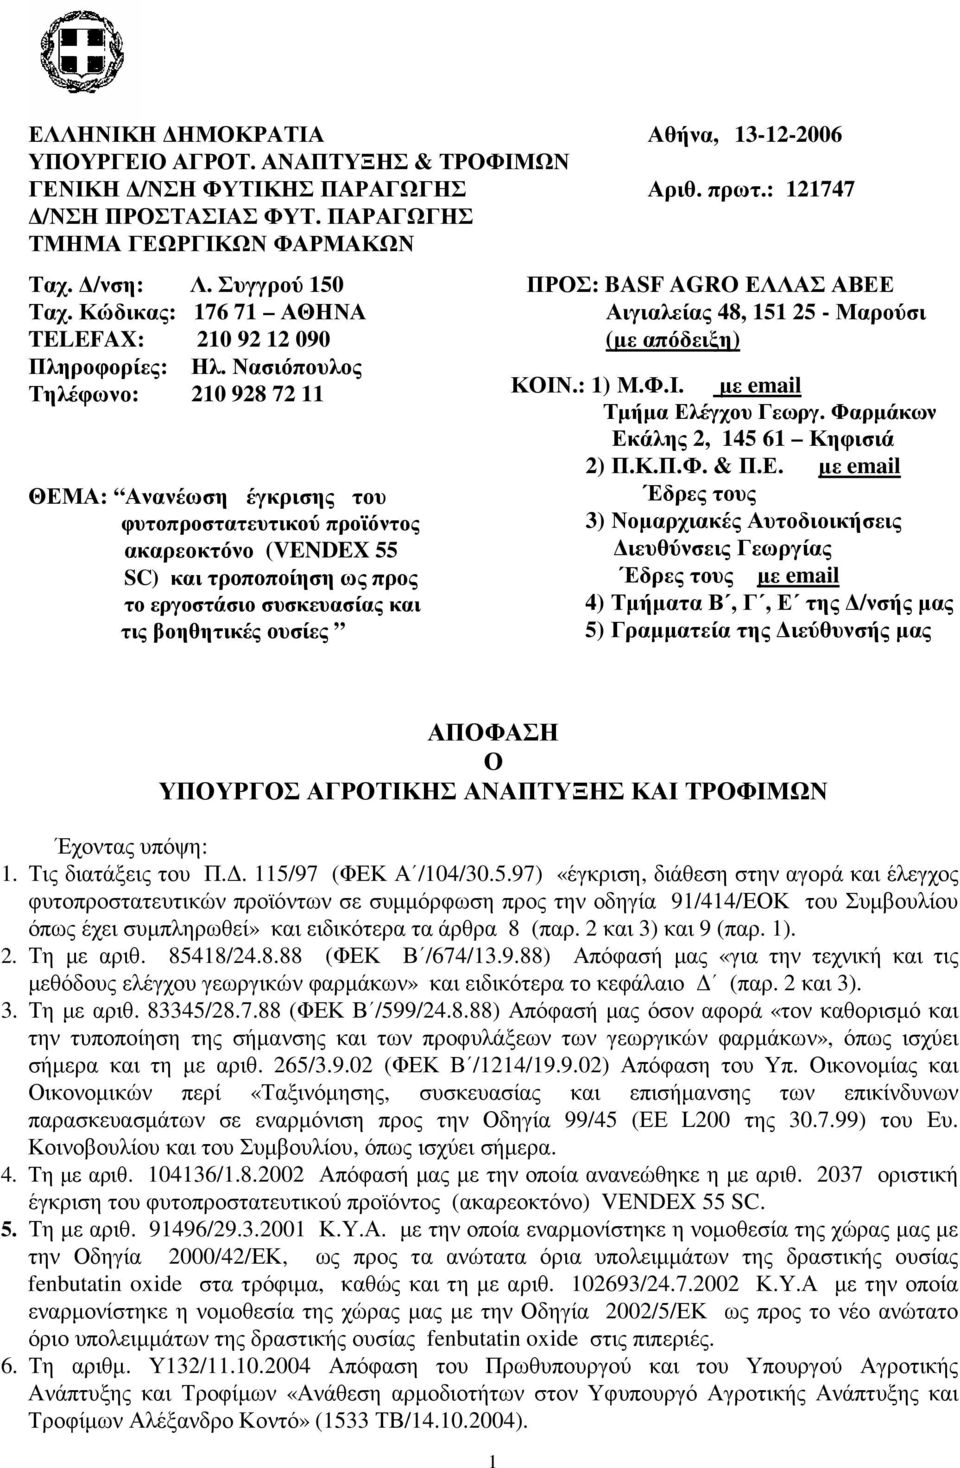 Νασιόπουλος Τηλέφωνο: 20 928 72 ΘΕΜΑ: Ανανέωση έγκρισης του φυτοπροστατευτικού προϊόντος ακαρεοκτόνο (VENDEX 55 SC) και τροποποίηση ως προς το εργοστάσιο συσκευασίας και τις βοηθητικές ουσίες ΠΡΟΣ: